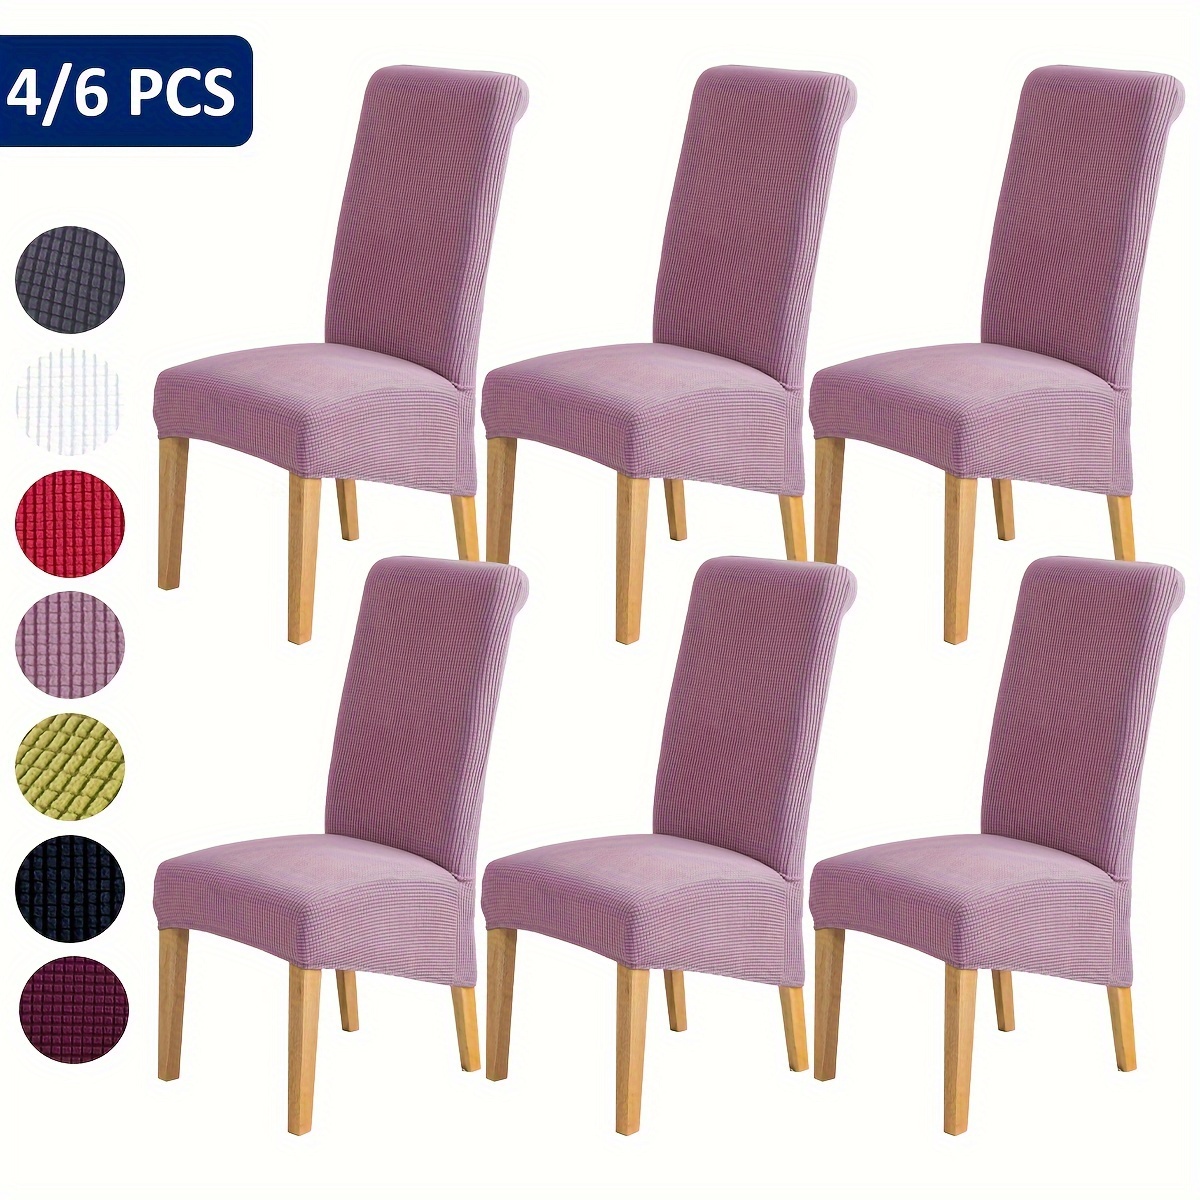 

Housses extensibles pour chaises (4/6 pièces), housses de chaise de salle à manger, protections pour meubles, pour la décoration de la salle à manger, du salon, du bureau et de la maison